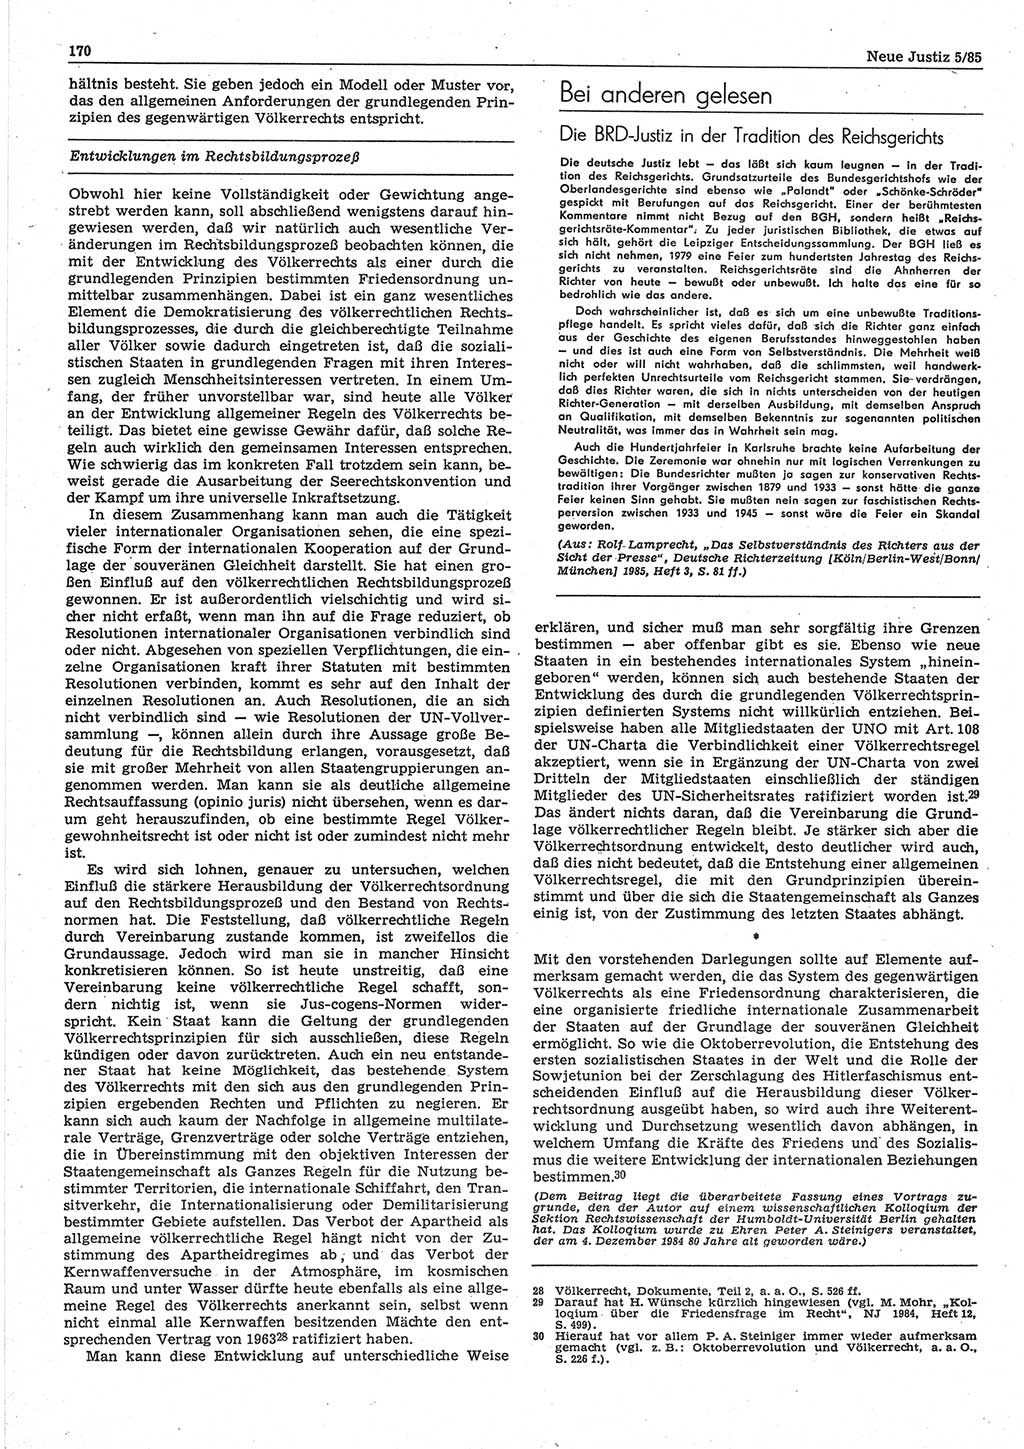 Neue Justiz (NJ), Zeitschrift für sozialistisches Recht und Gesetzlichkeit [Deutsche Demokratische Republik (DDR)], 39. Jahrgang 1985, Seite 170 (NJ DDR 1985, S. 170)